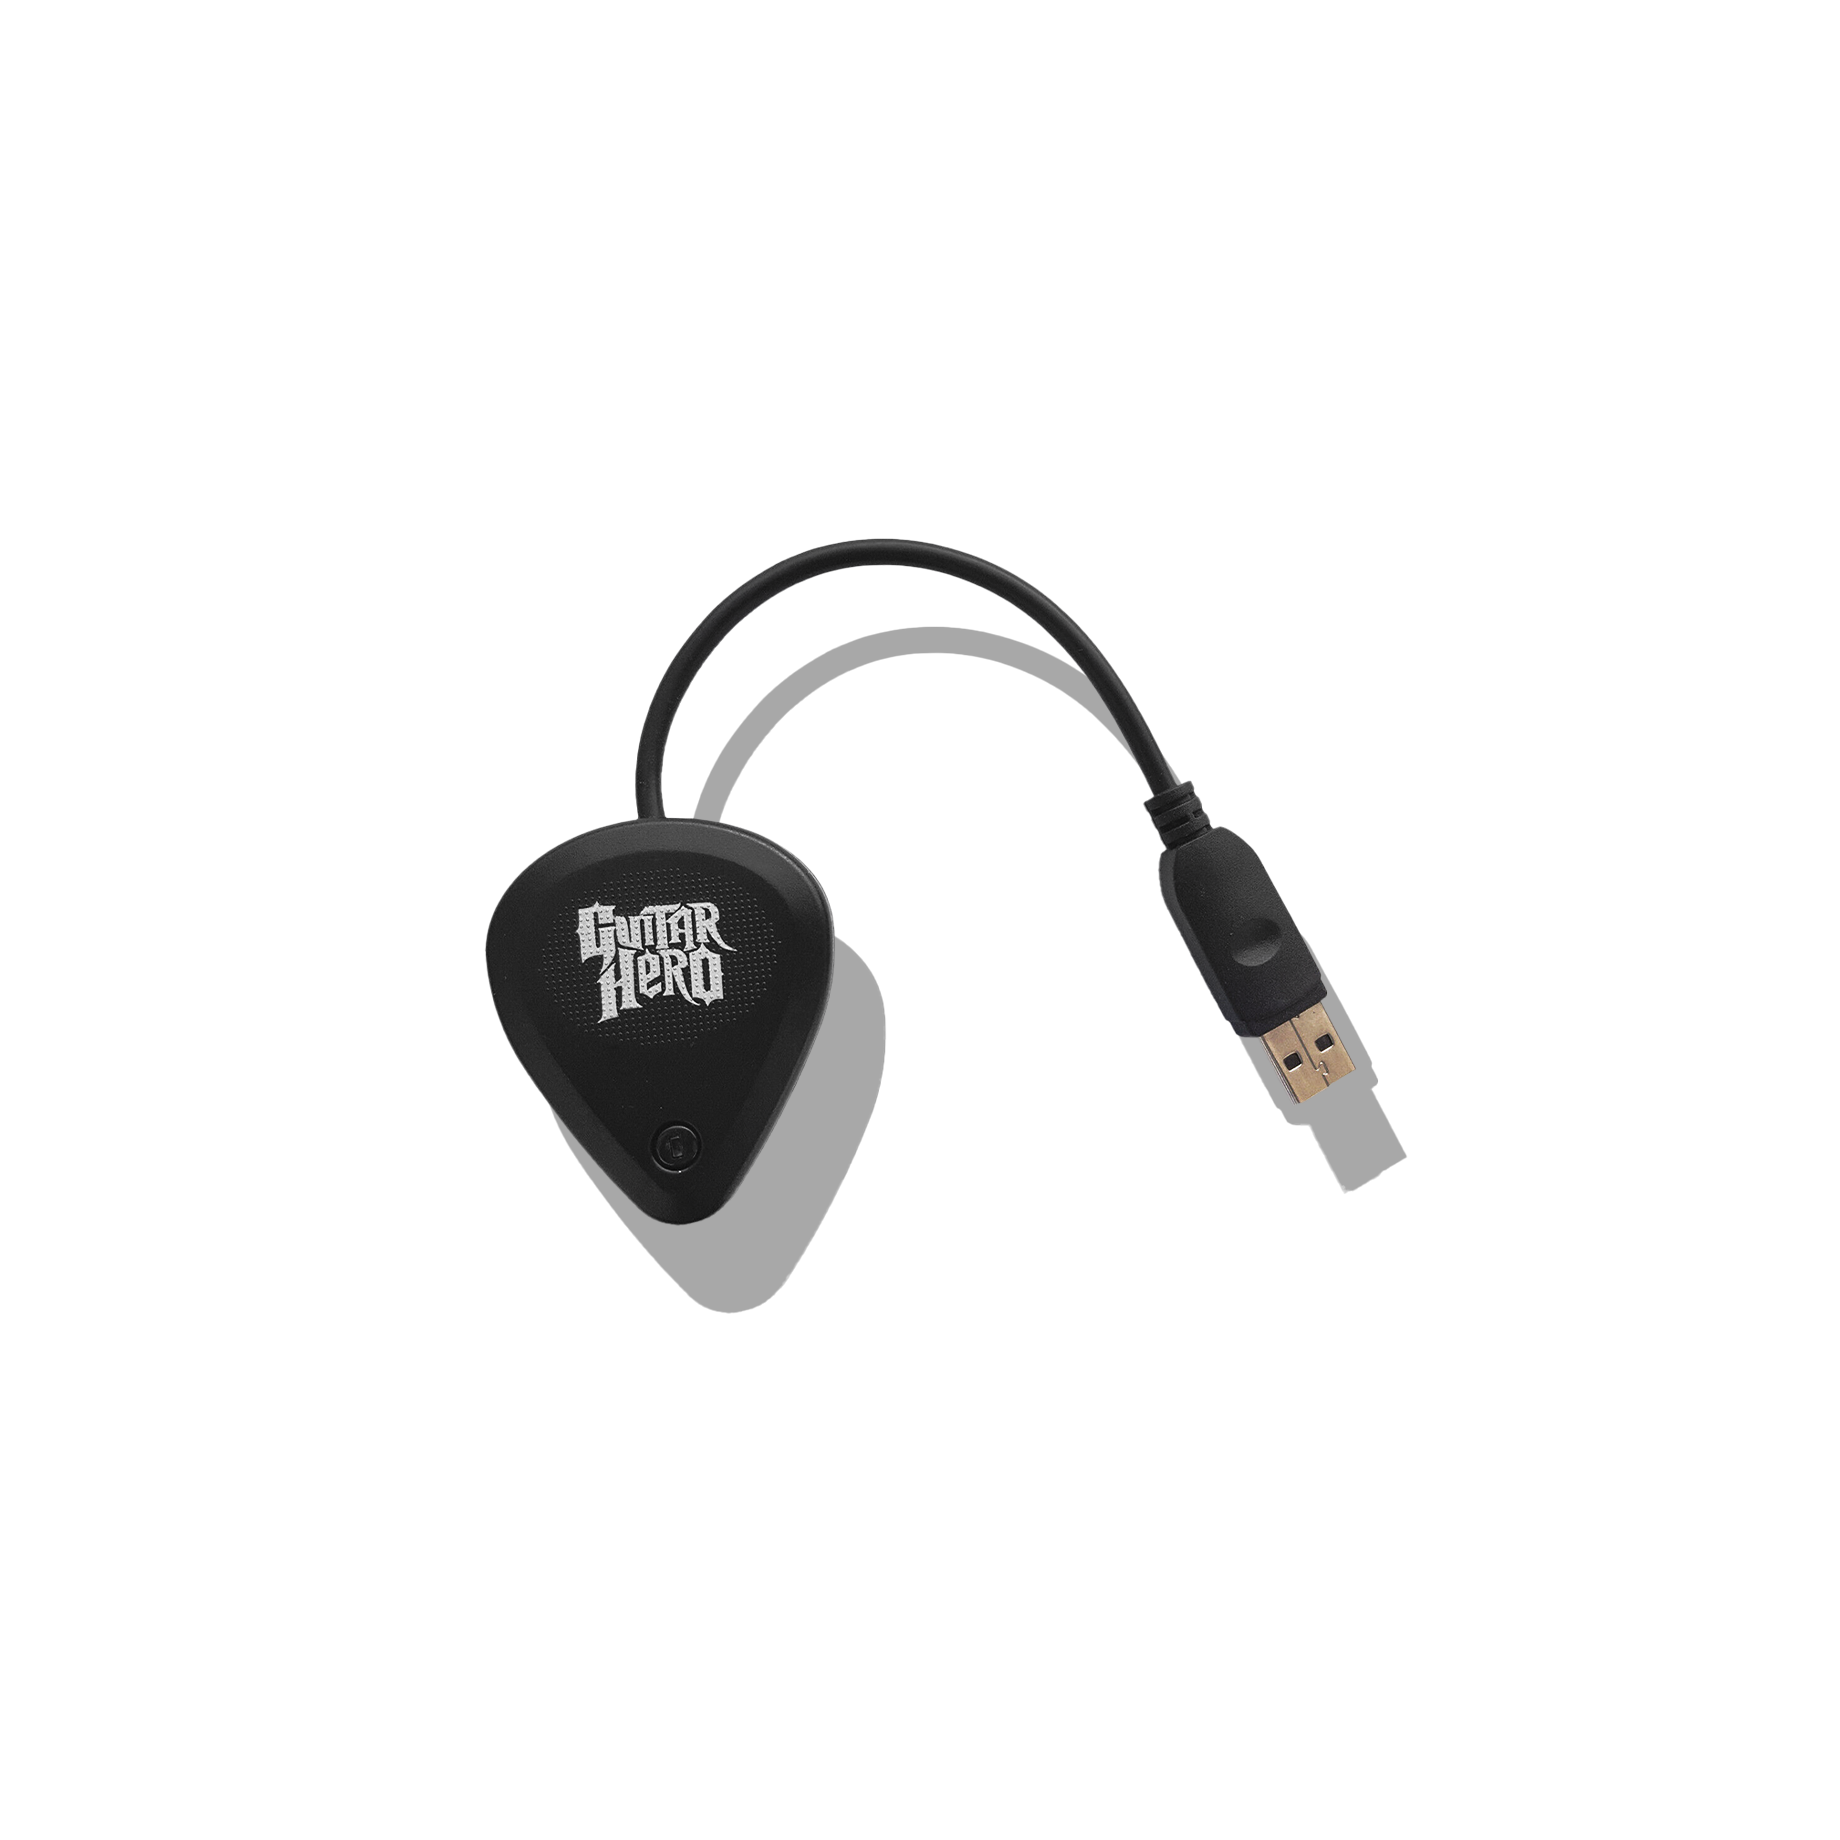 Les Paul Guitar Hero Wireless Receiver